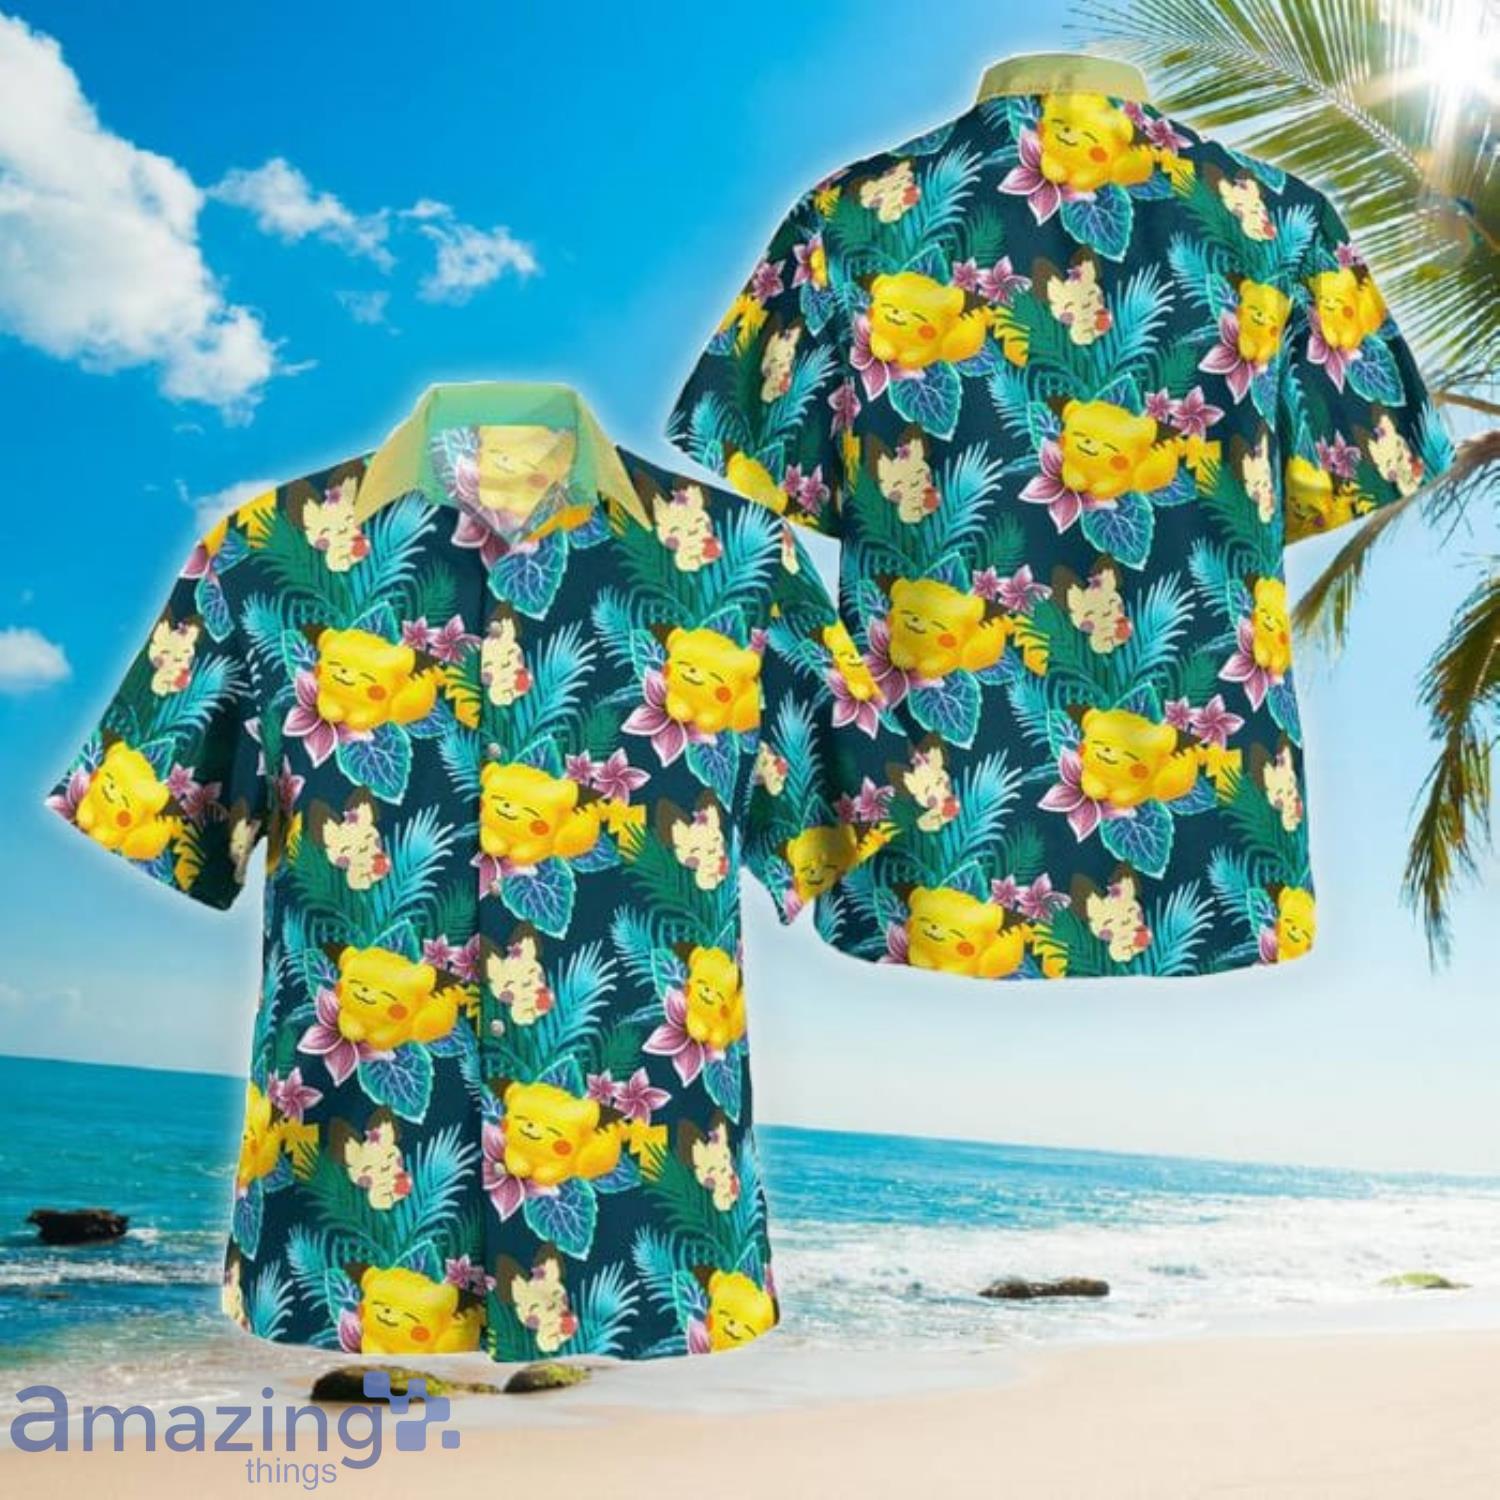 Boston Red Sox MLB Hawaiian Shirt Sunlight Aloha Shirt - Trendy Aloha